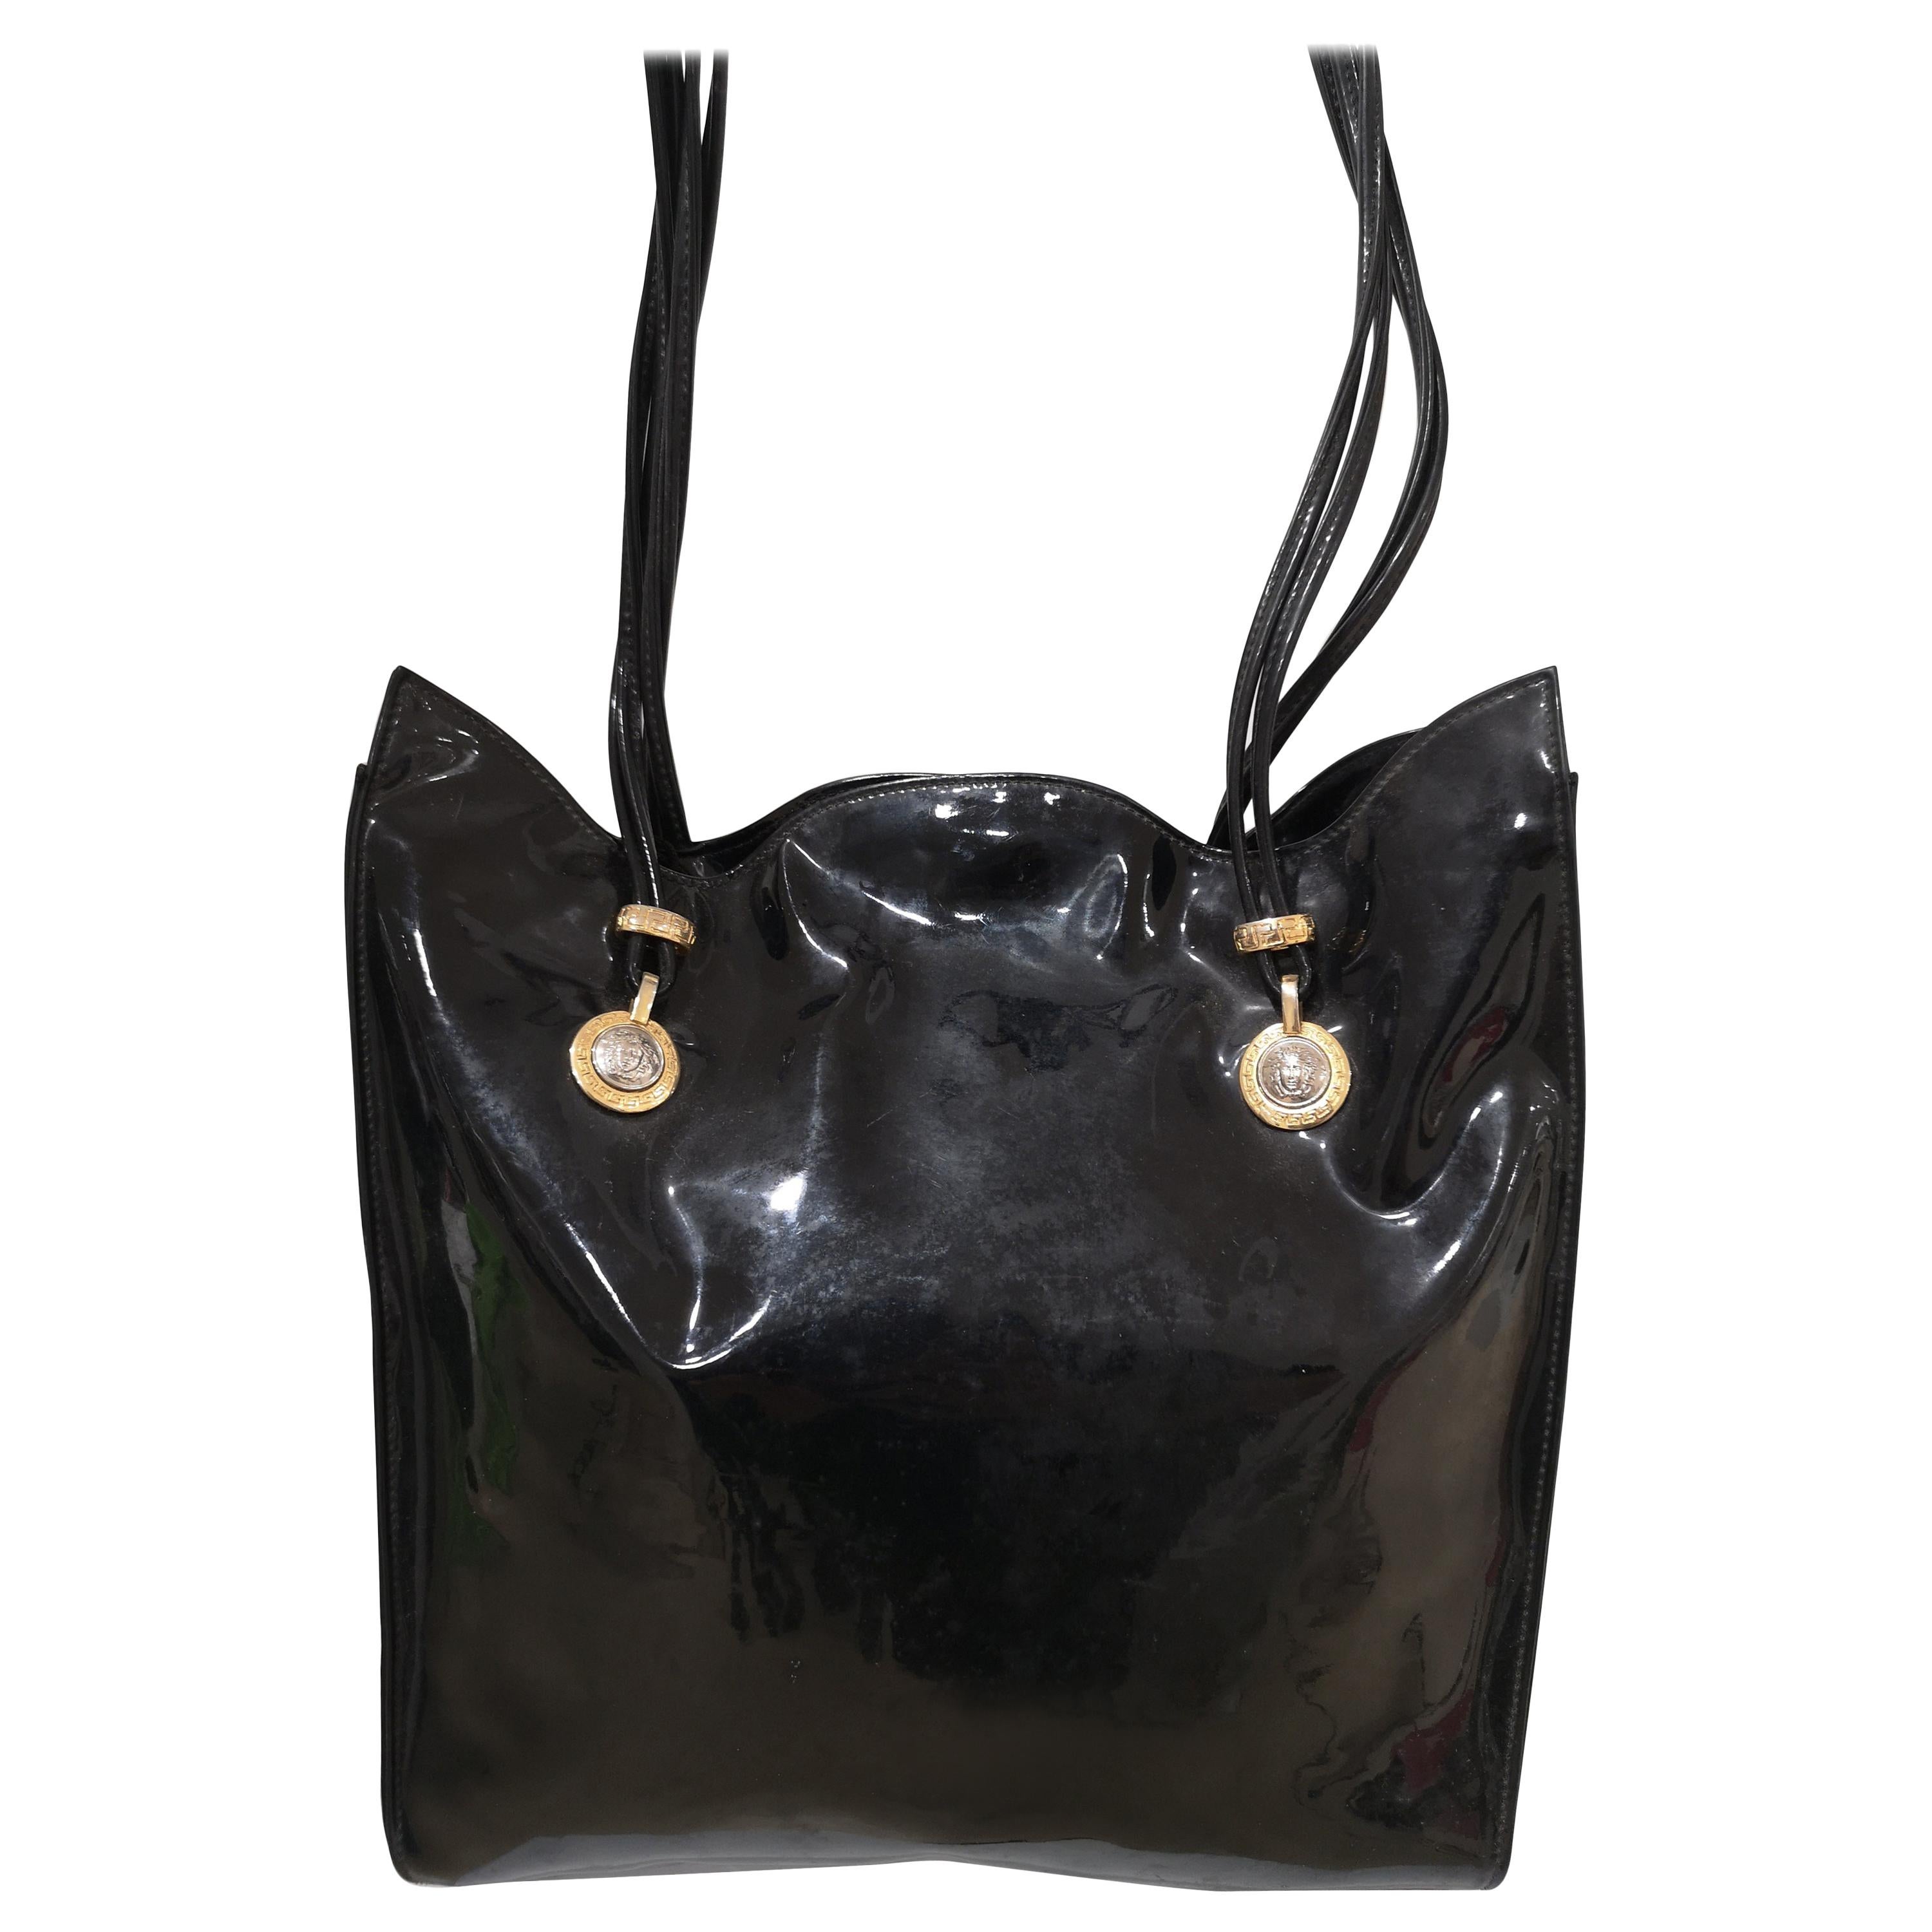 Versace black patent leather shoulder bag